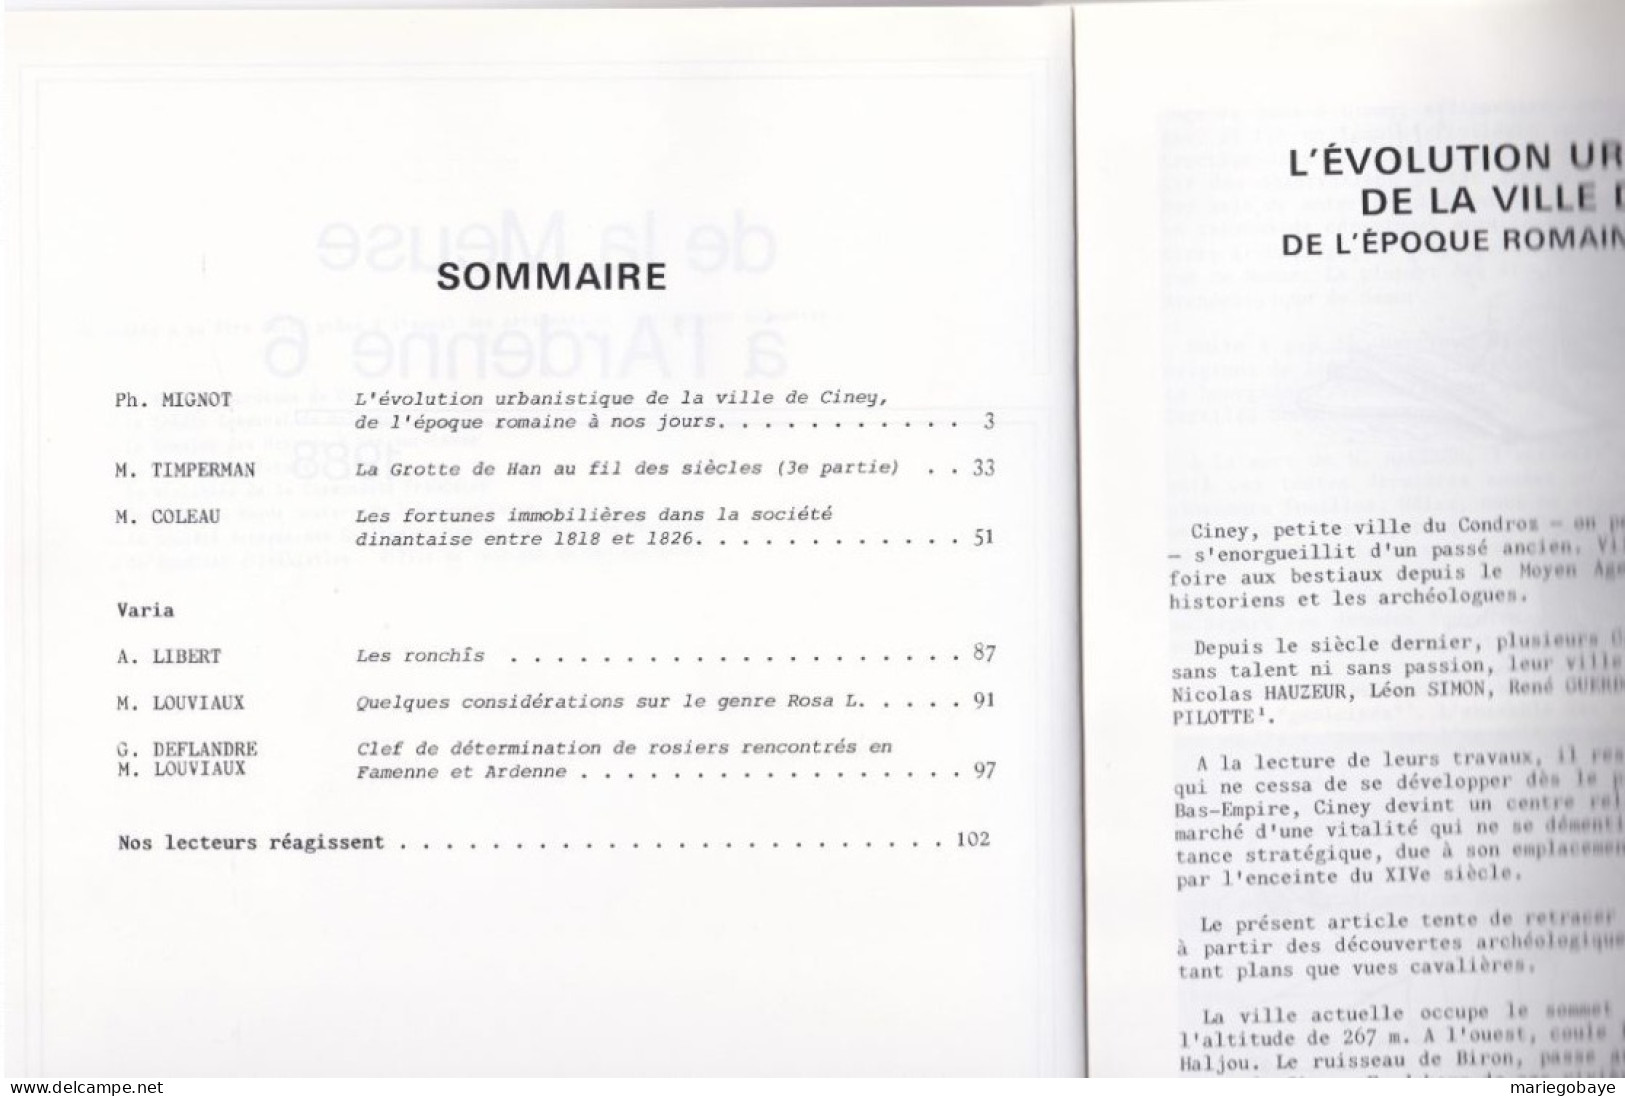 De La Meuse à L’Ardenne 6 1988 CINEY HAN-sur-LESSE DINANT ROSA L. 104 Pages - Belgium